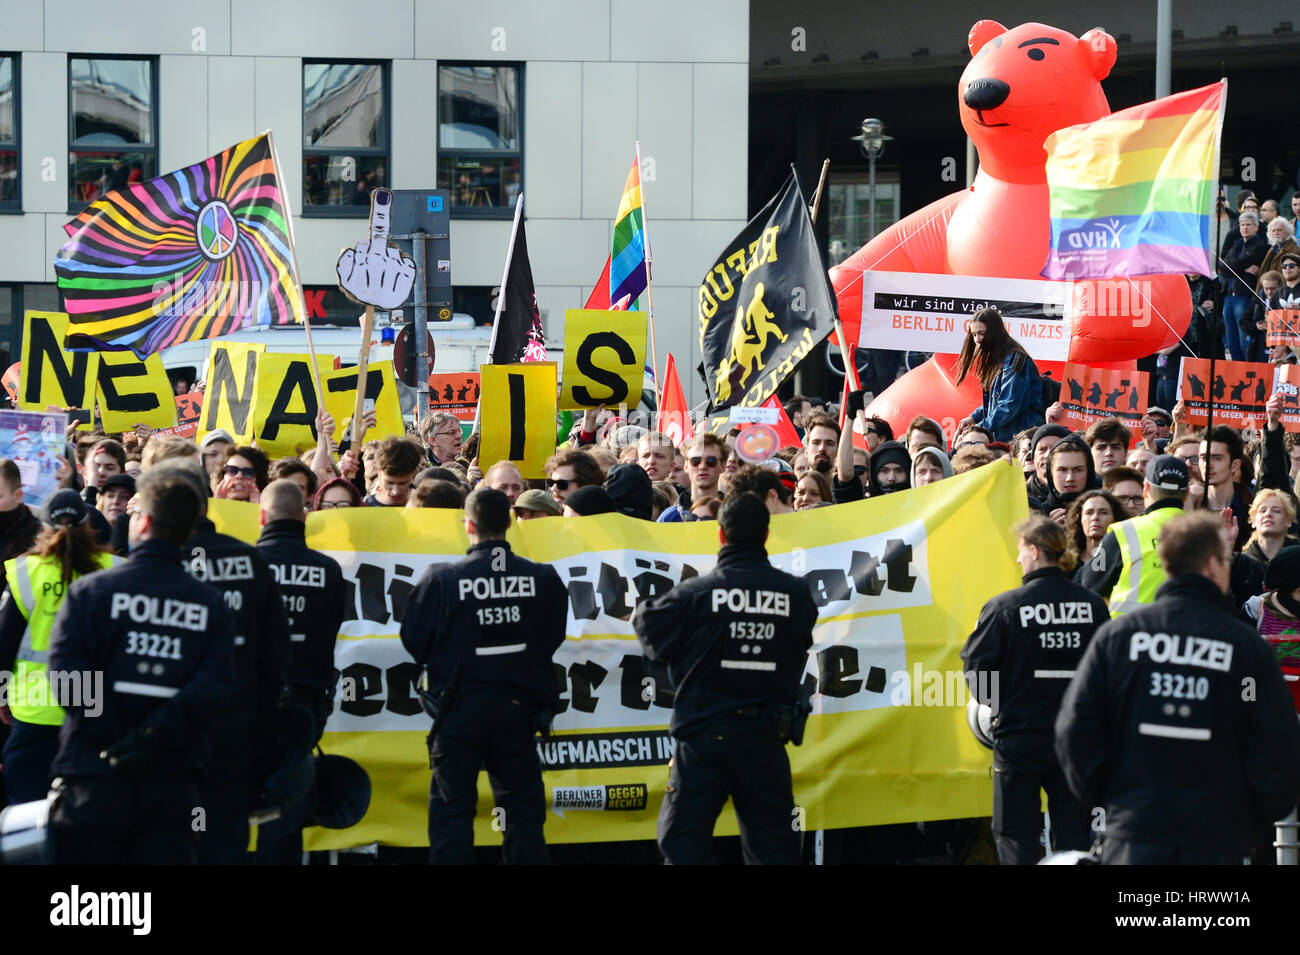 Berlino, Germania. 04 Mar, 2017. Anti-fascisti protestare contro un estremista di destra in dimostrazione contro Angela Merkel a Berlino, Germania, 04 marzo 2017. Foto: Maurizio Gambarini/dpa/Alamy Live News Foto Stock